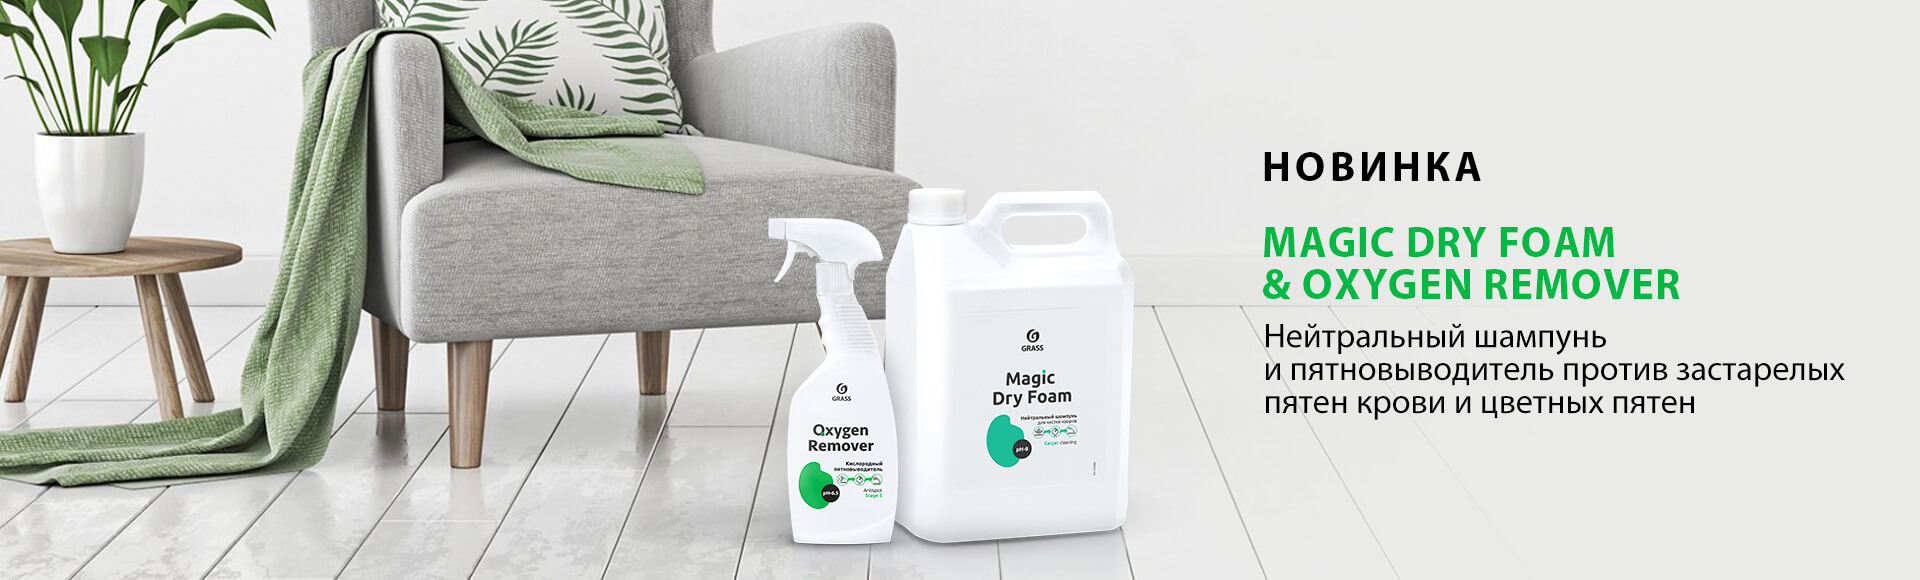 Magic Dry Foam & Oxygen Remover - нейтральный шампунь и пятновыводитель против застарелых пятен крови и цветных пятен